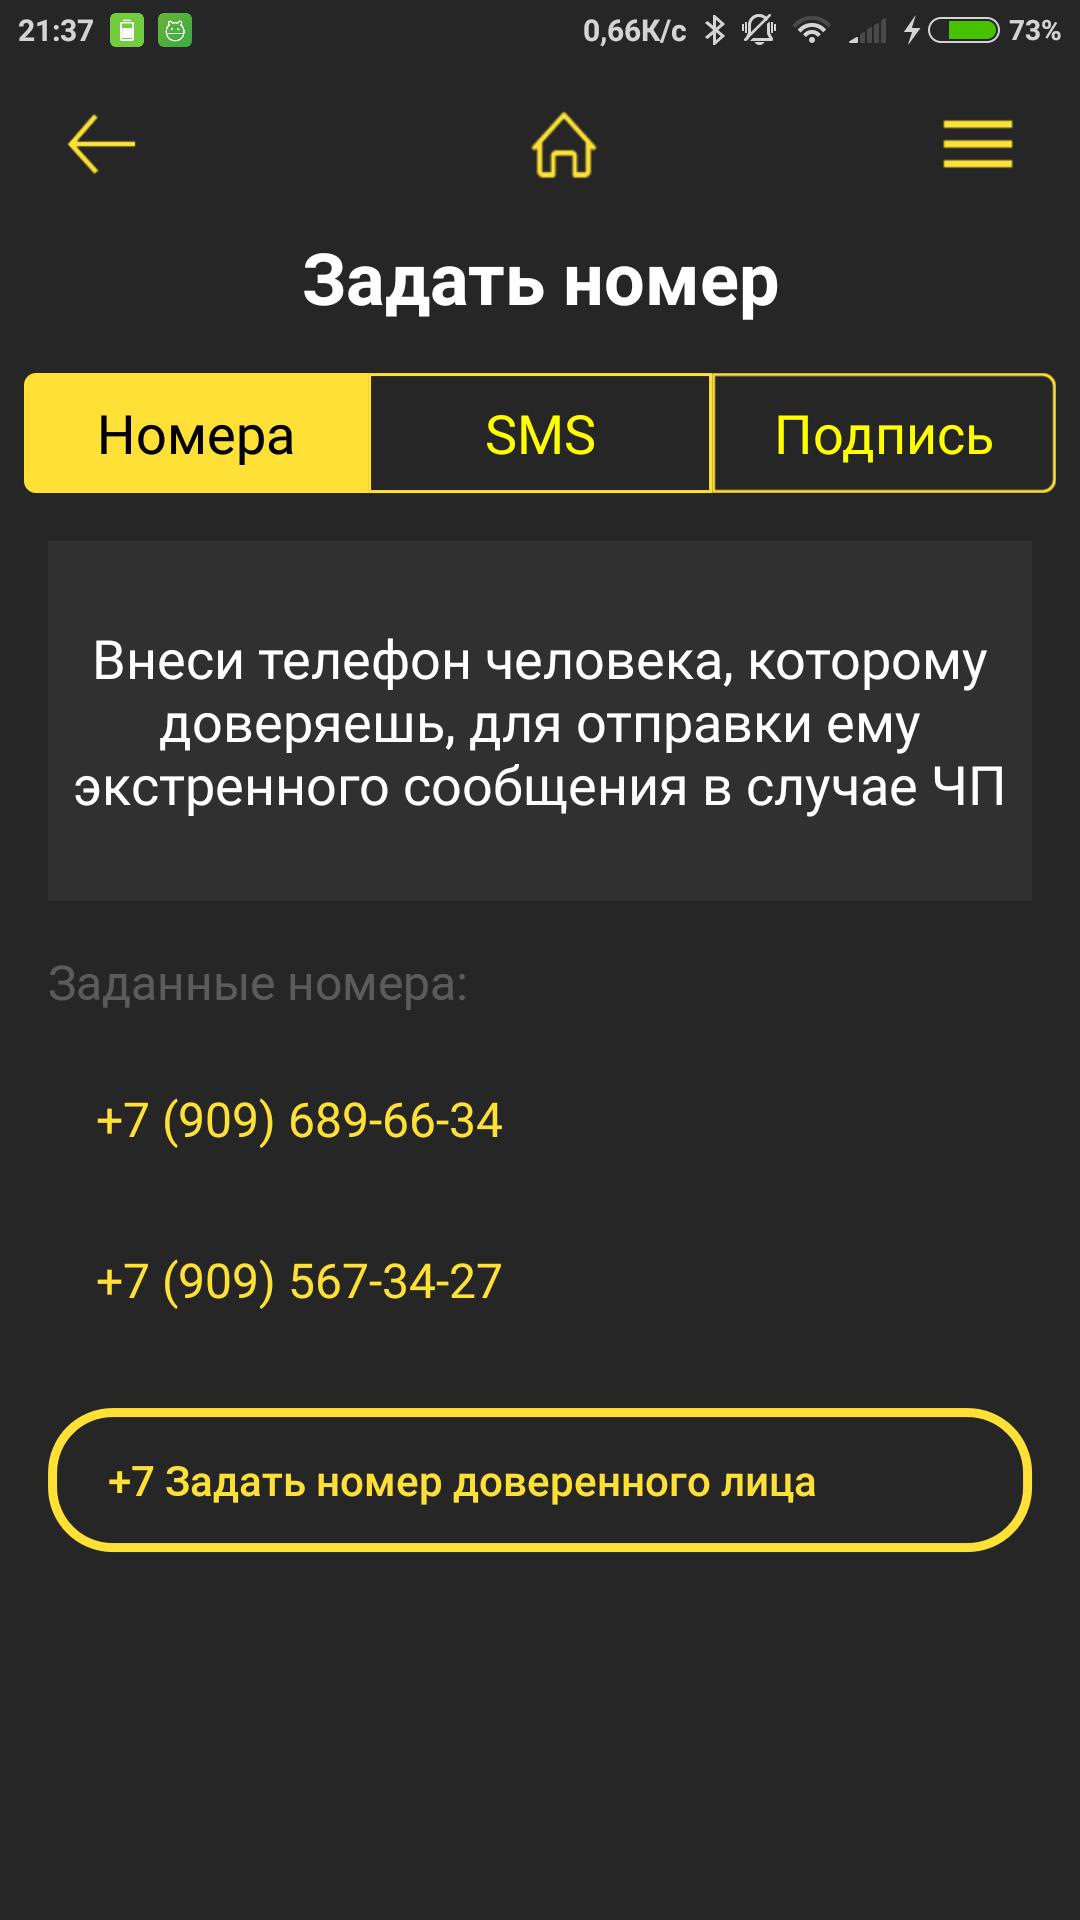 Внести телефон в базу. Помощь рядом РФ приложение.